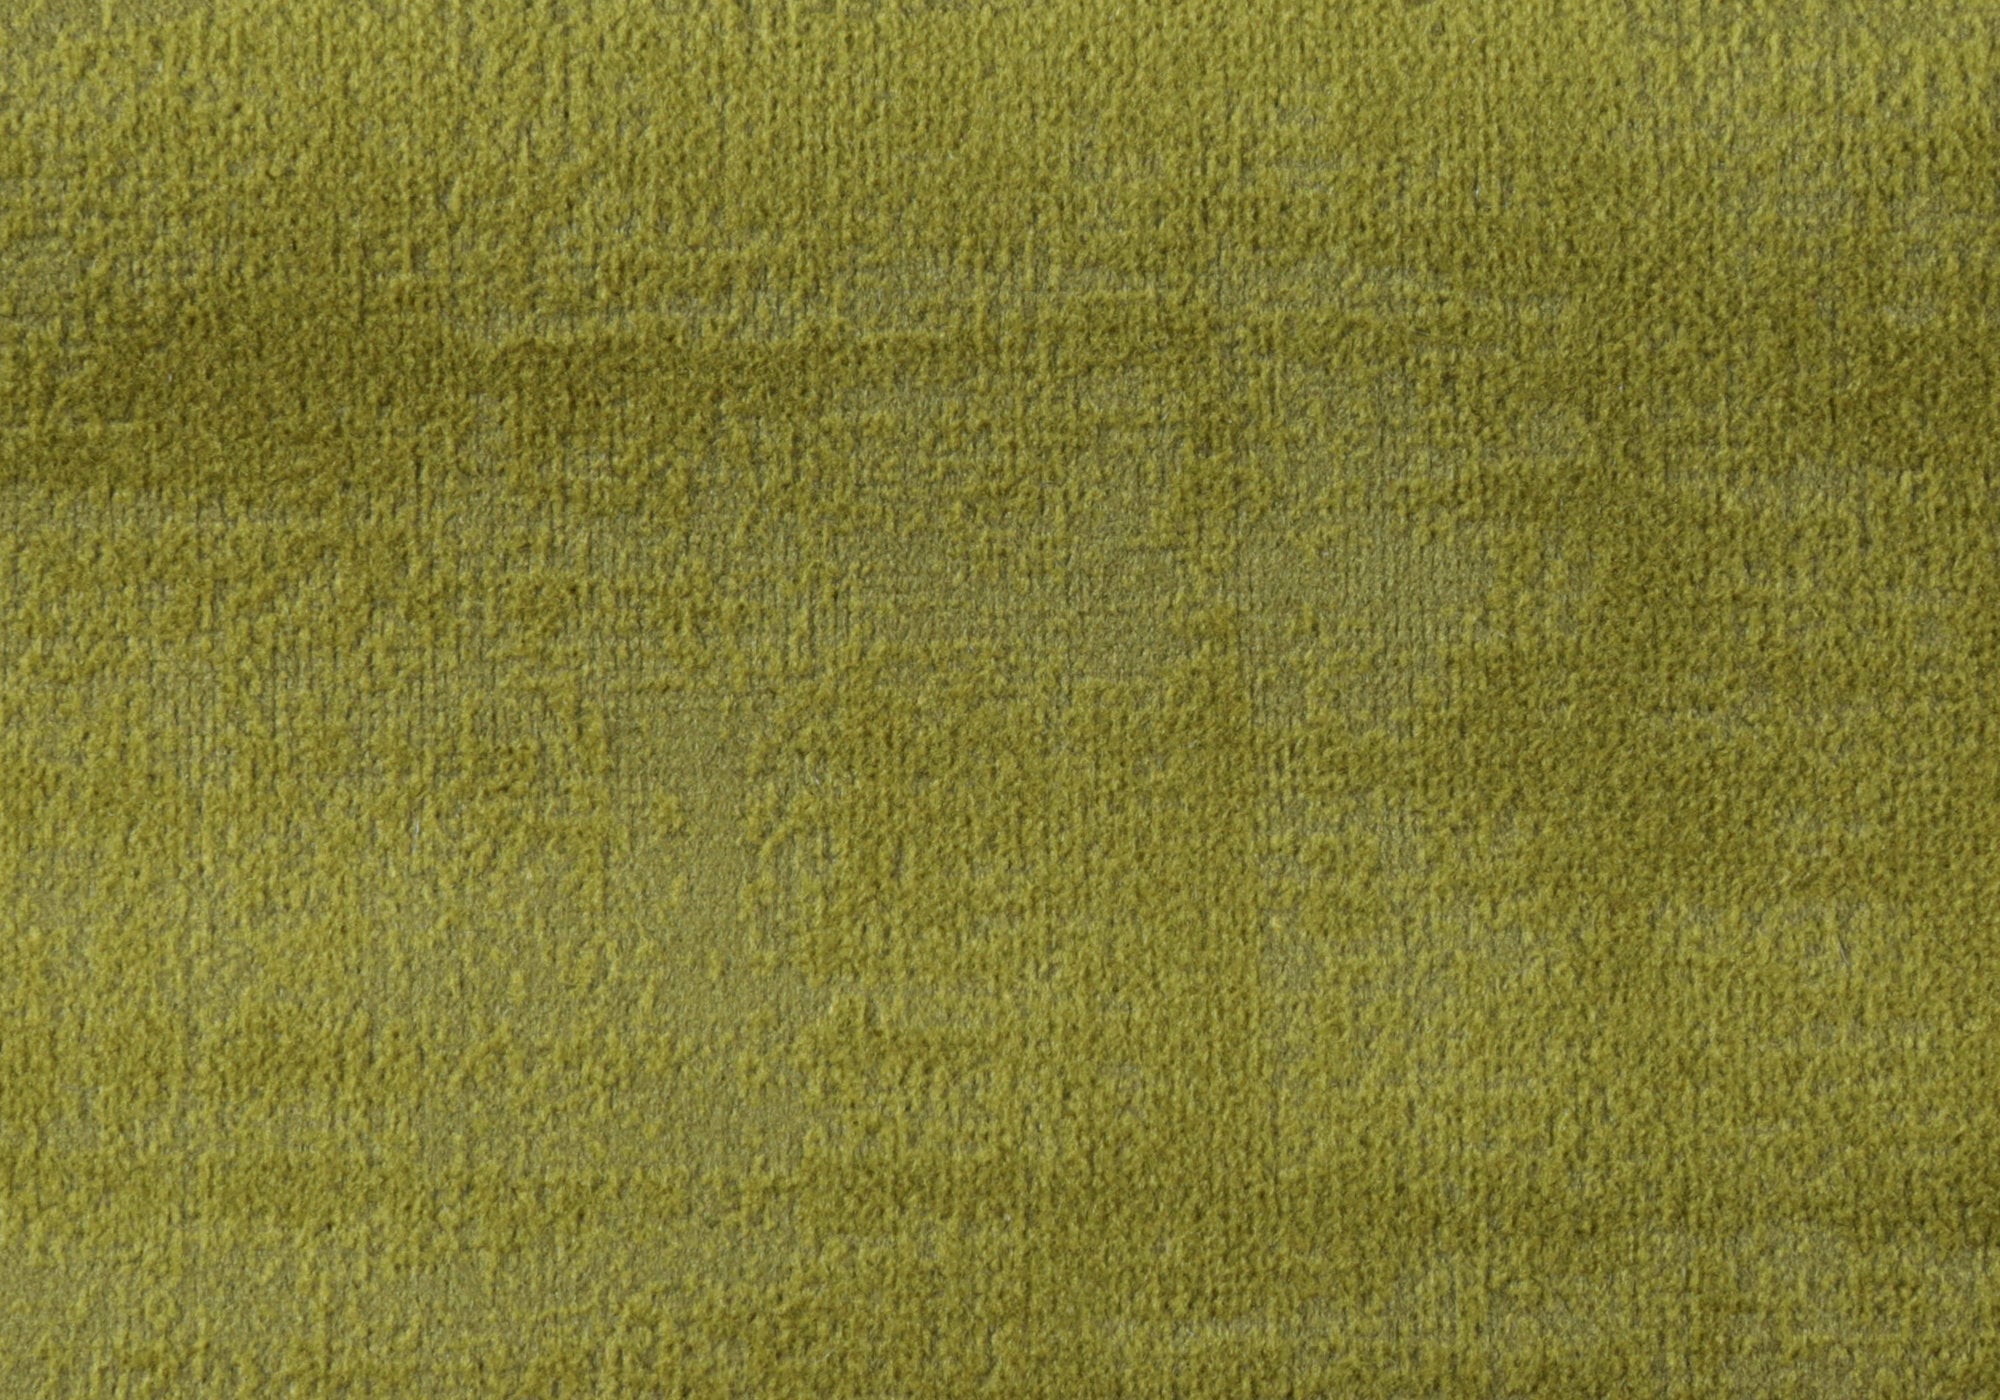 Pillow - 18X 18 / Lime Green Brushed Velvet / 1Pc